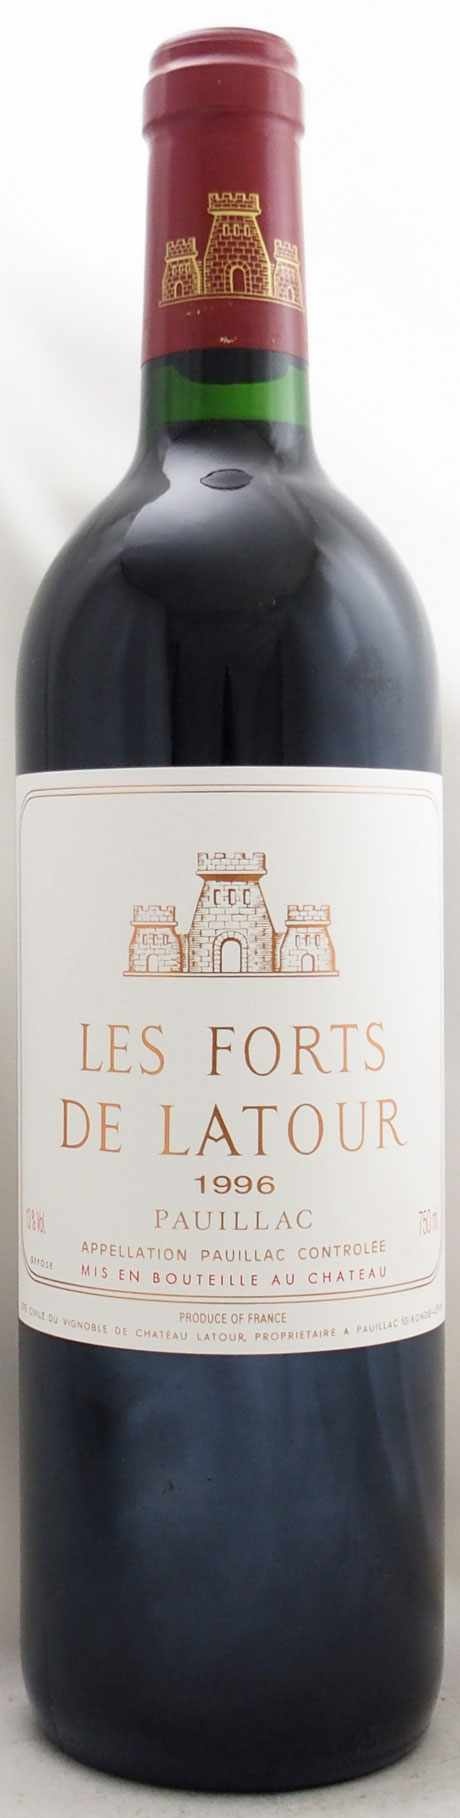 1996年 レ フォール ド ラトゥール LES FORTS DE LATOUR の販売